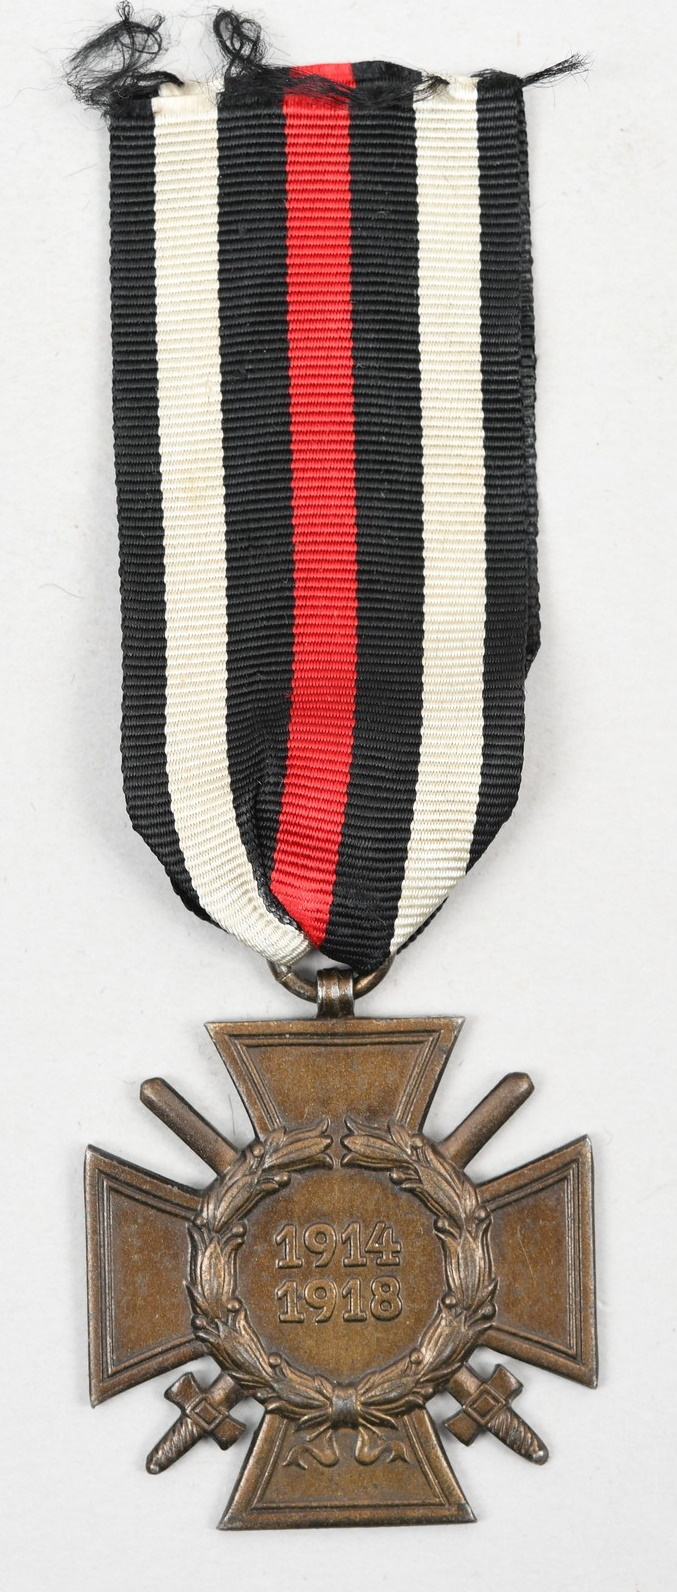 Combatants Cross of Honor 1914/1918